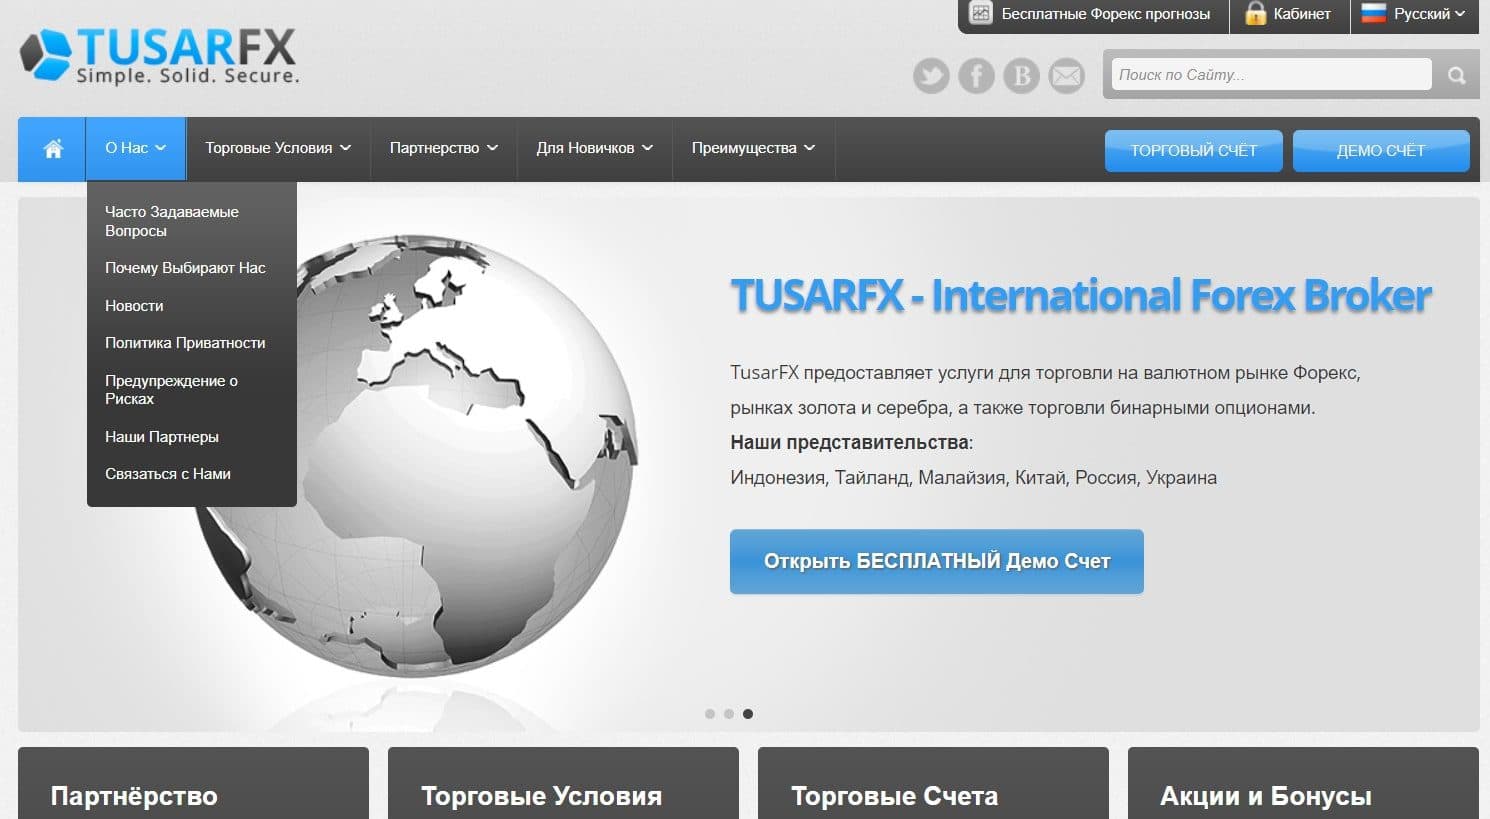 Официальный сайт Tusarfx